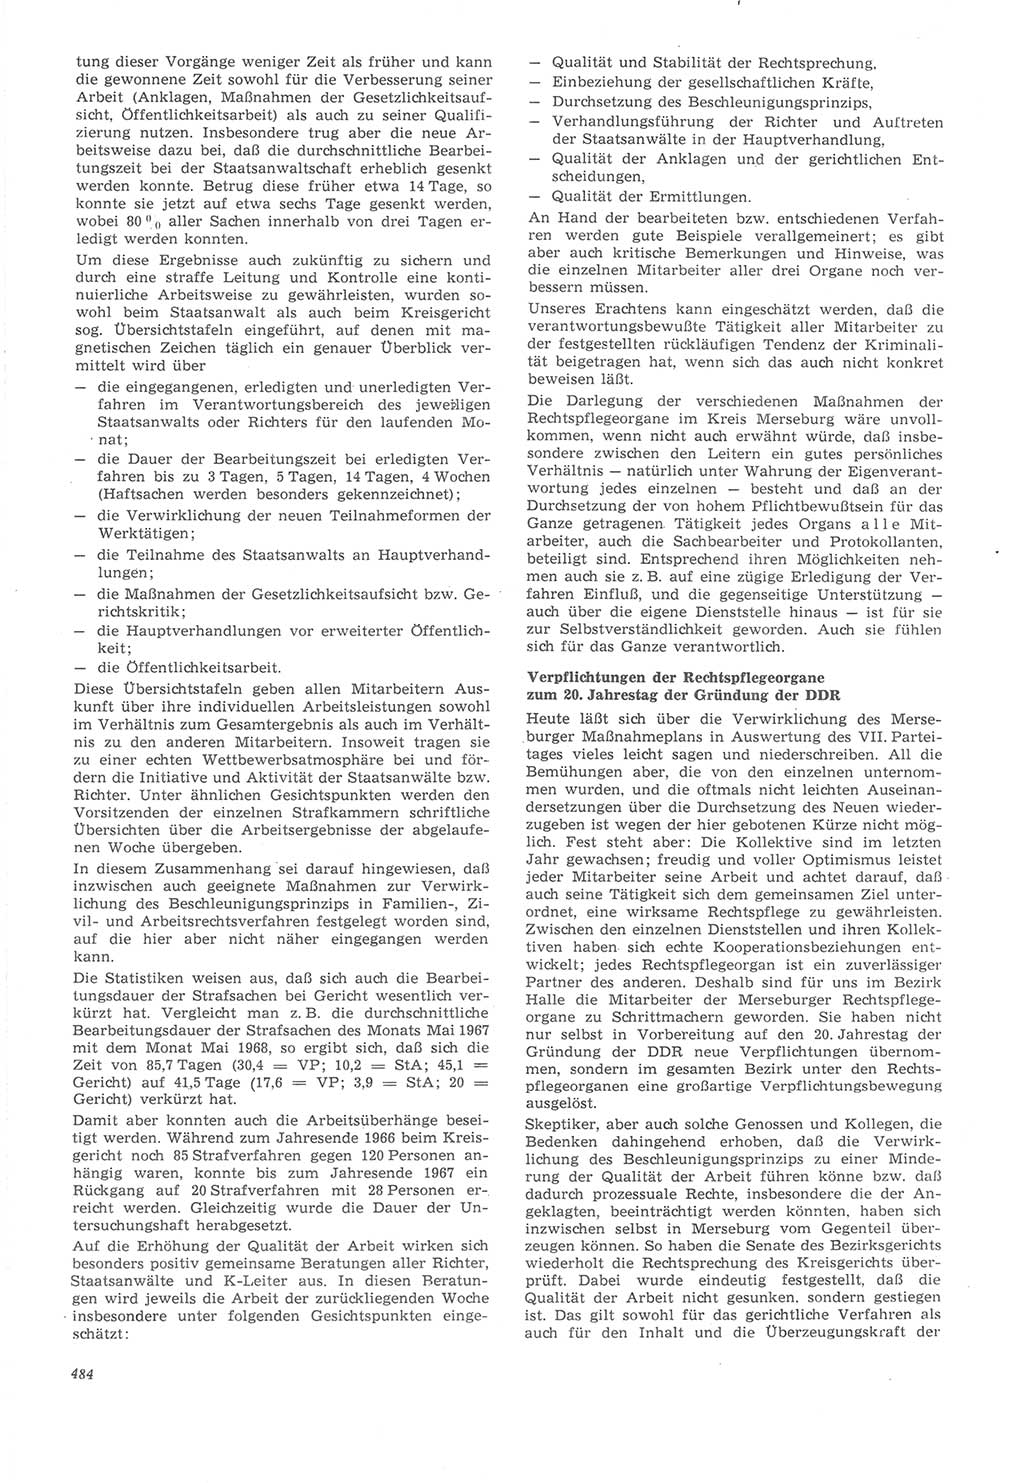 Neue Justiz (NJ), Zeitschrift für Recht und Rechtswissenschaft [Deutsche Demokratische Republik (DDR)], 22. Jahrgang 1968, Seite 484 (NJ DDR 1968, S. 484)